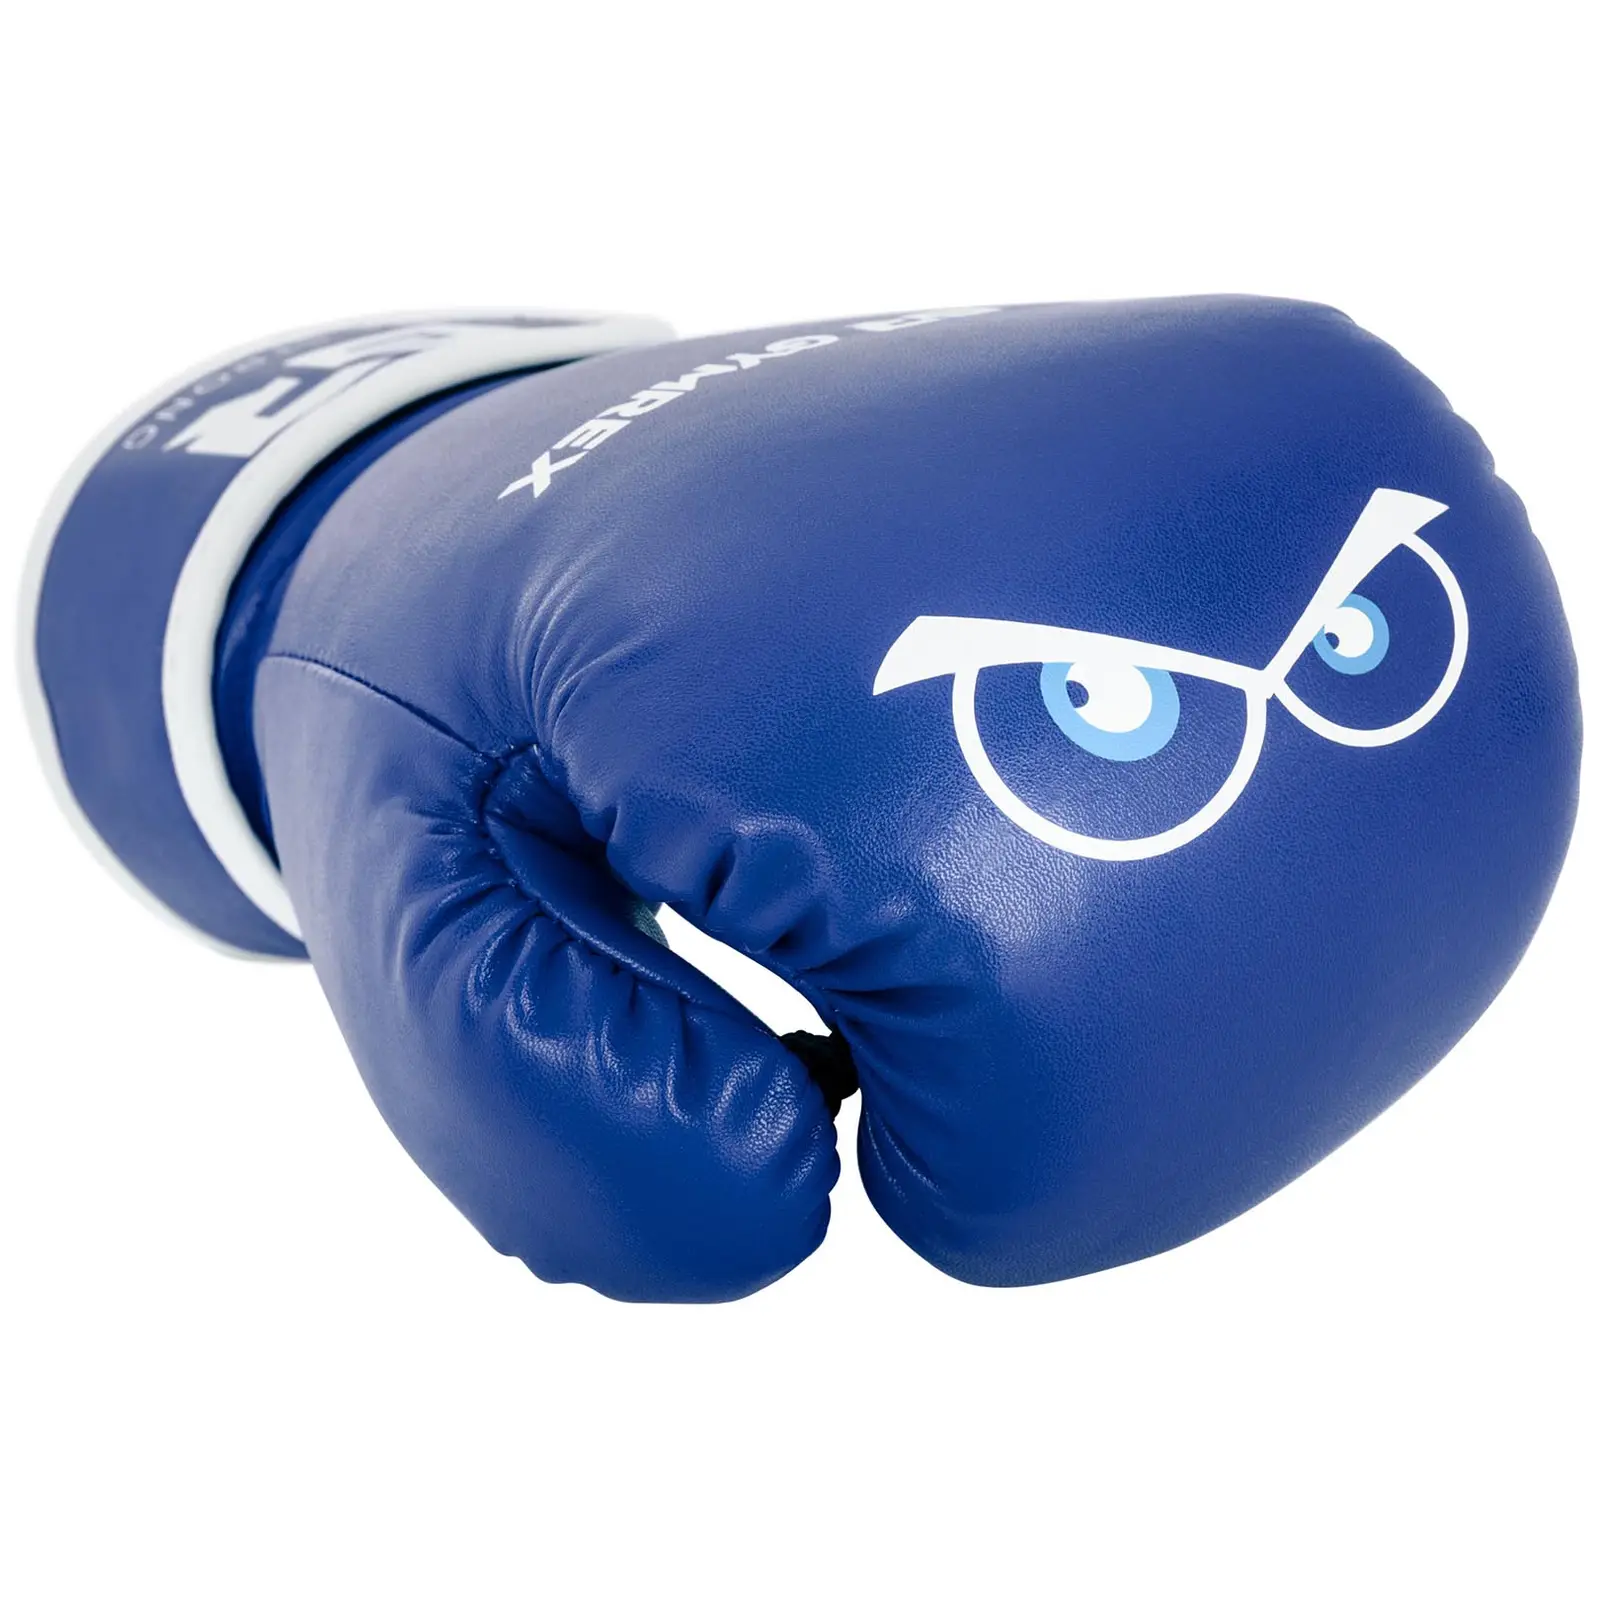 Gants de boxe pour enfants - 4 oz - Bleus